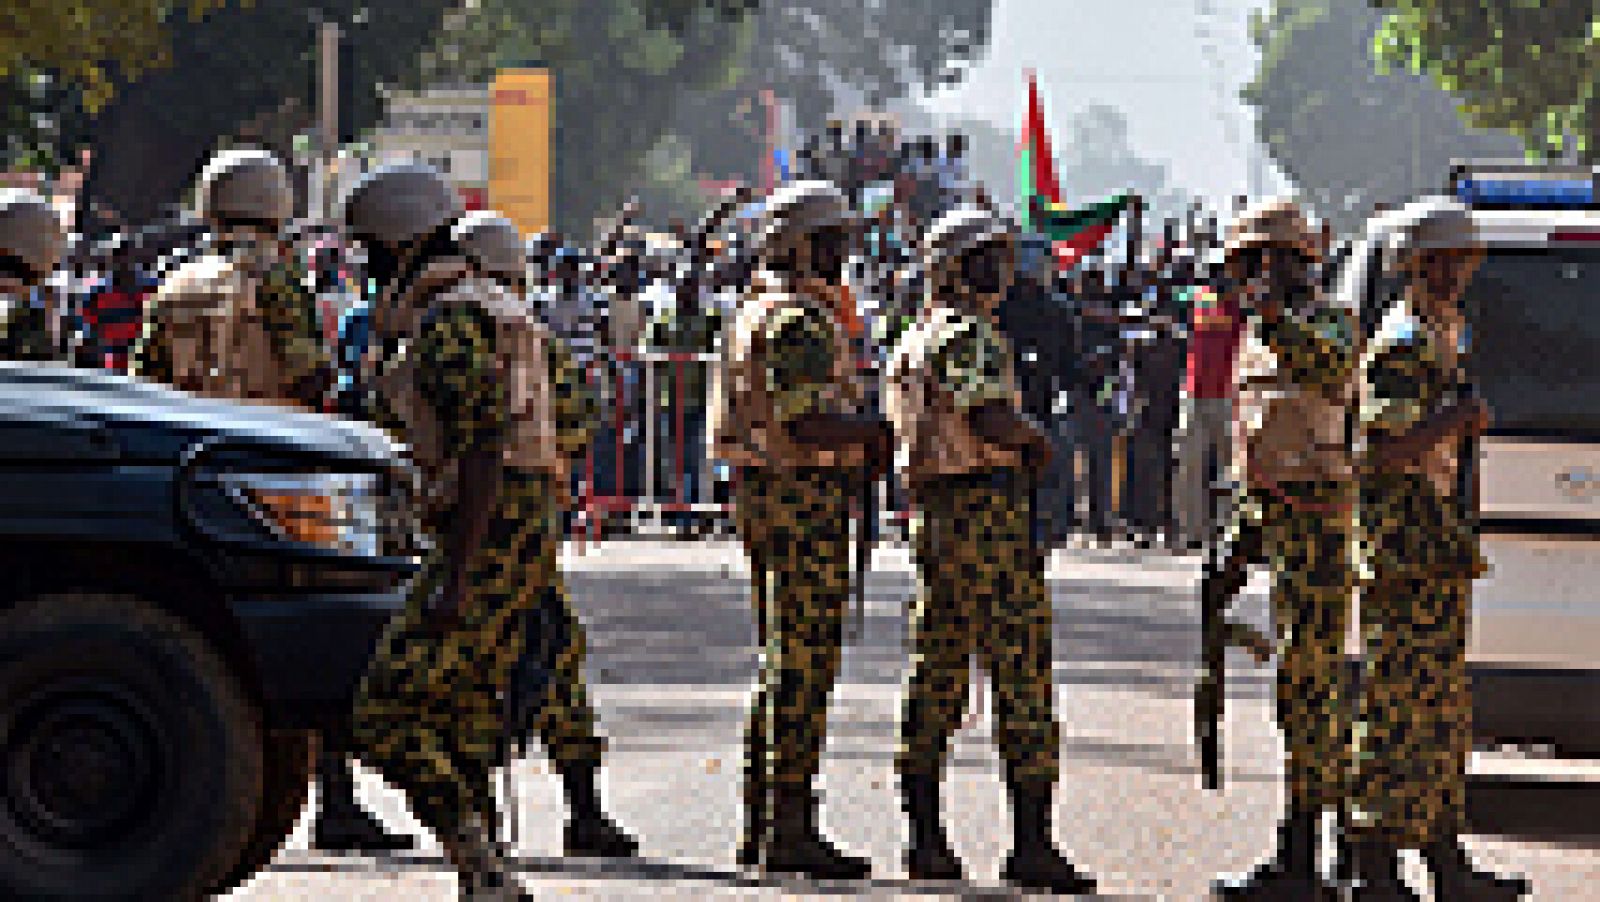  El jefe de las Fuerzas Armadas de Burkina Faso, general Honore Traore, ha anunciado este jueves la disolución de la Asamblea Nacional y la creación Gobierno nacional de transición que durará como máximo 12 meses. No obstante, Traore ha precisado que ese Gobierno de transición no estará dirigido por él.  Las protestas contra el presidente, que lleva en el poder desde 1987 tras protagonizar un golpe de Estado, arrancaron hace dos días, cuando miles de burkineses se manifestaron en la capital al grito de "Veintisiete años es suficiente" 